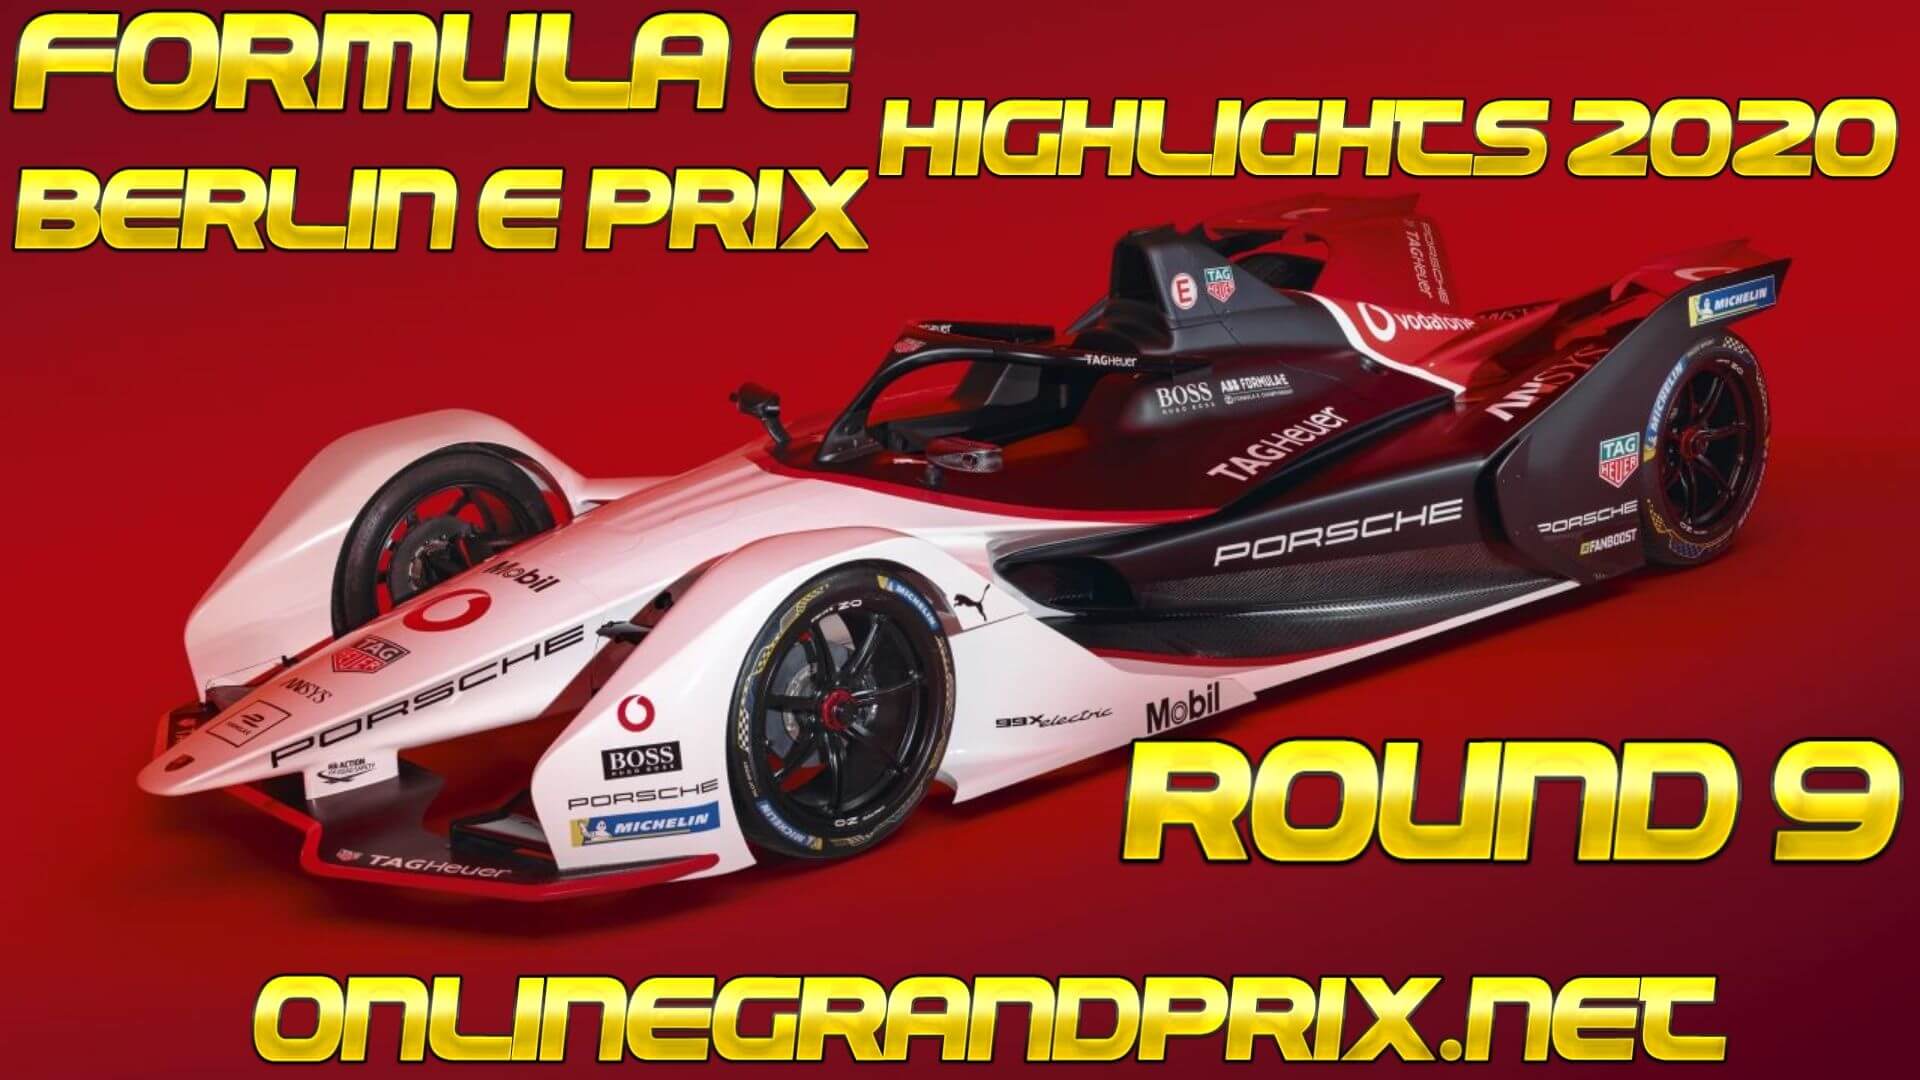 Berlin E Prix Formula E Highlights 2020 Round 9